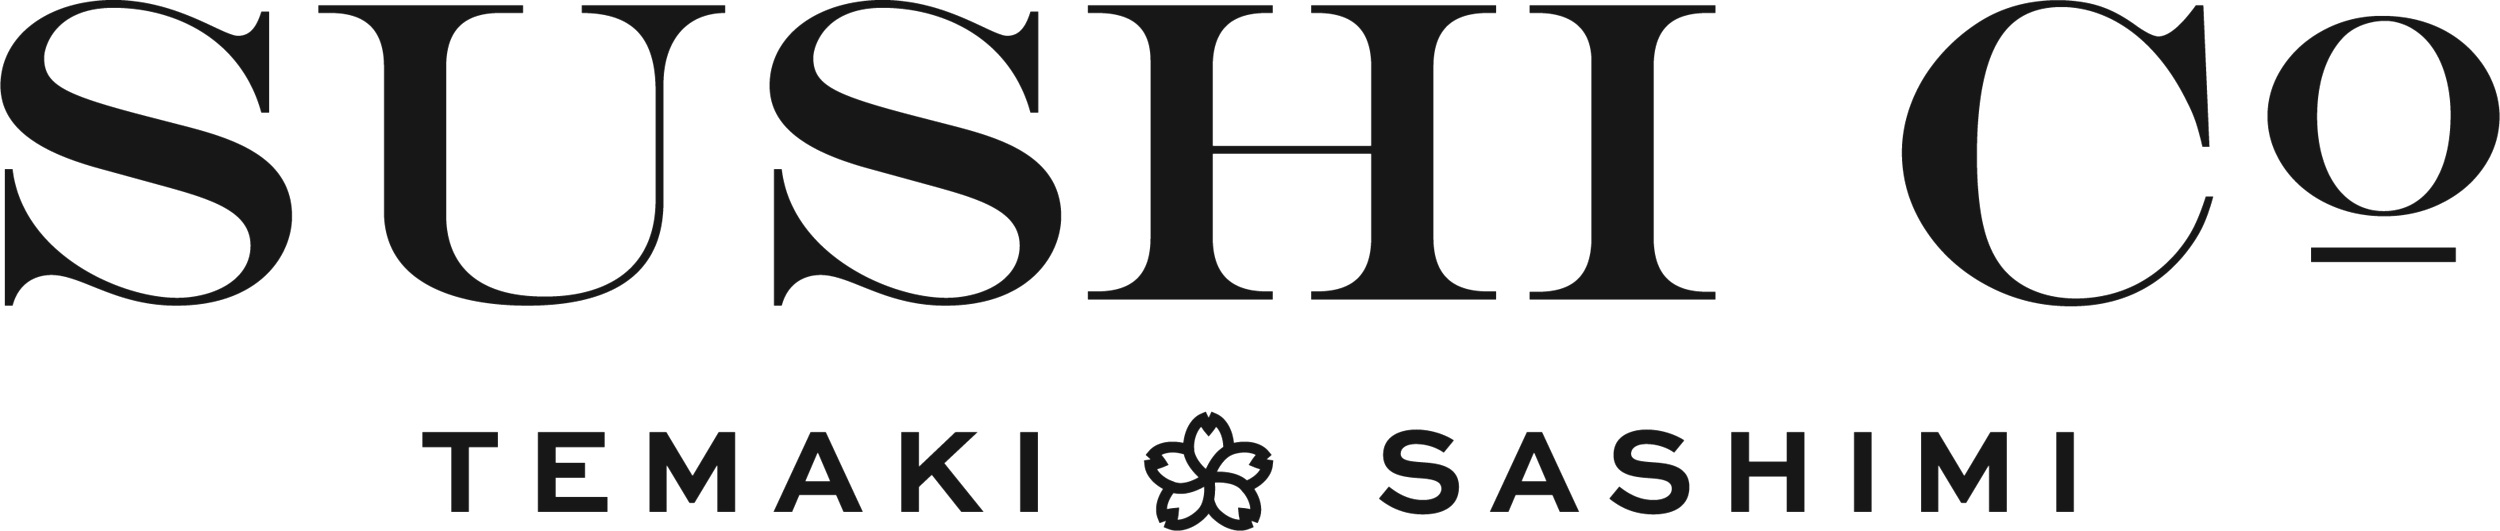 Sushi Co